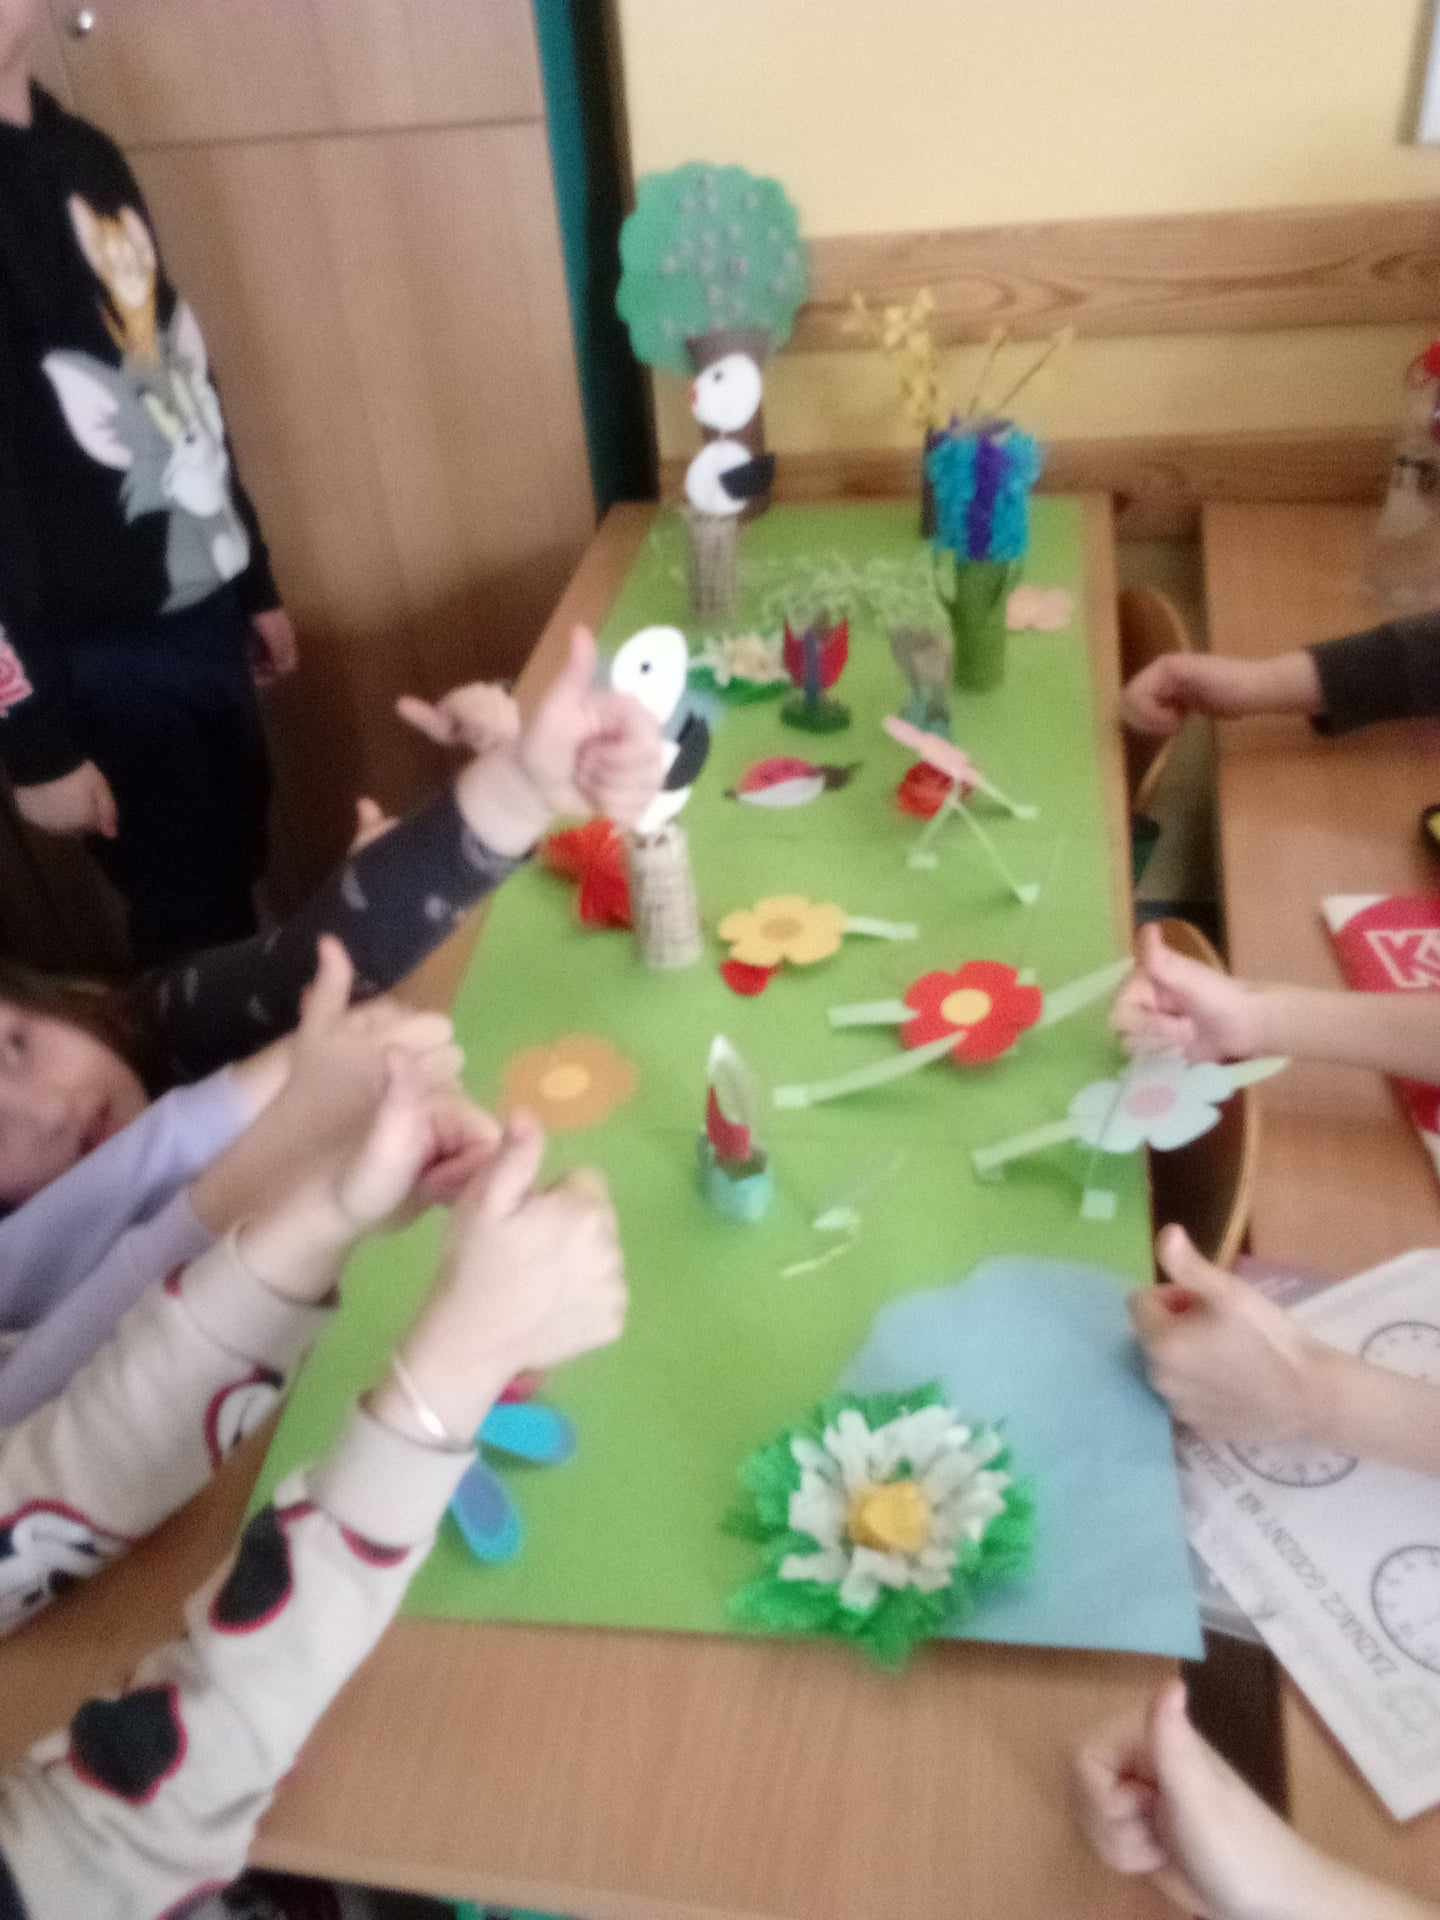 Przy ławce szkolnej na której rozłożone są przybory plastyczne siedzą uczniowie i wycinają kwiaty z kolorowego papieru. Nie widać ich twarzy ale ręce wskazują podniesiony kciuk co świadczy o zadowoleniu z tej aktywności.